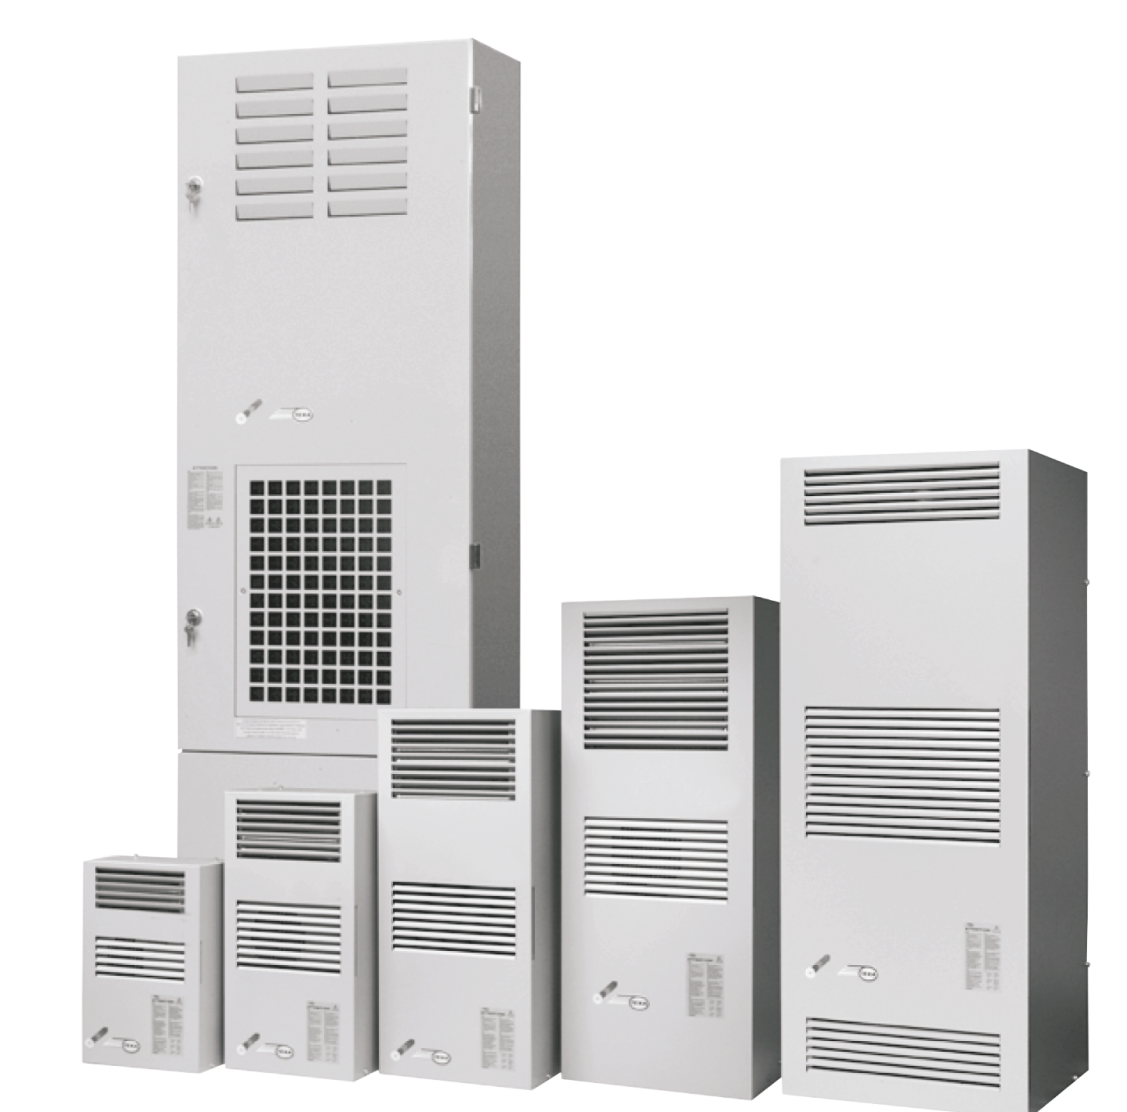 Air conditioner EGO60 (400V, 3~50Hz, 5800W)